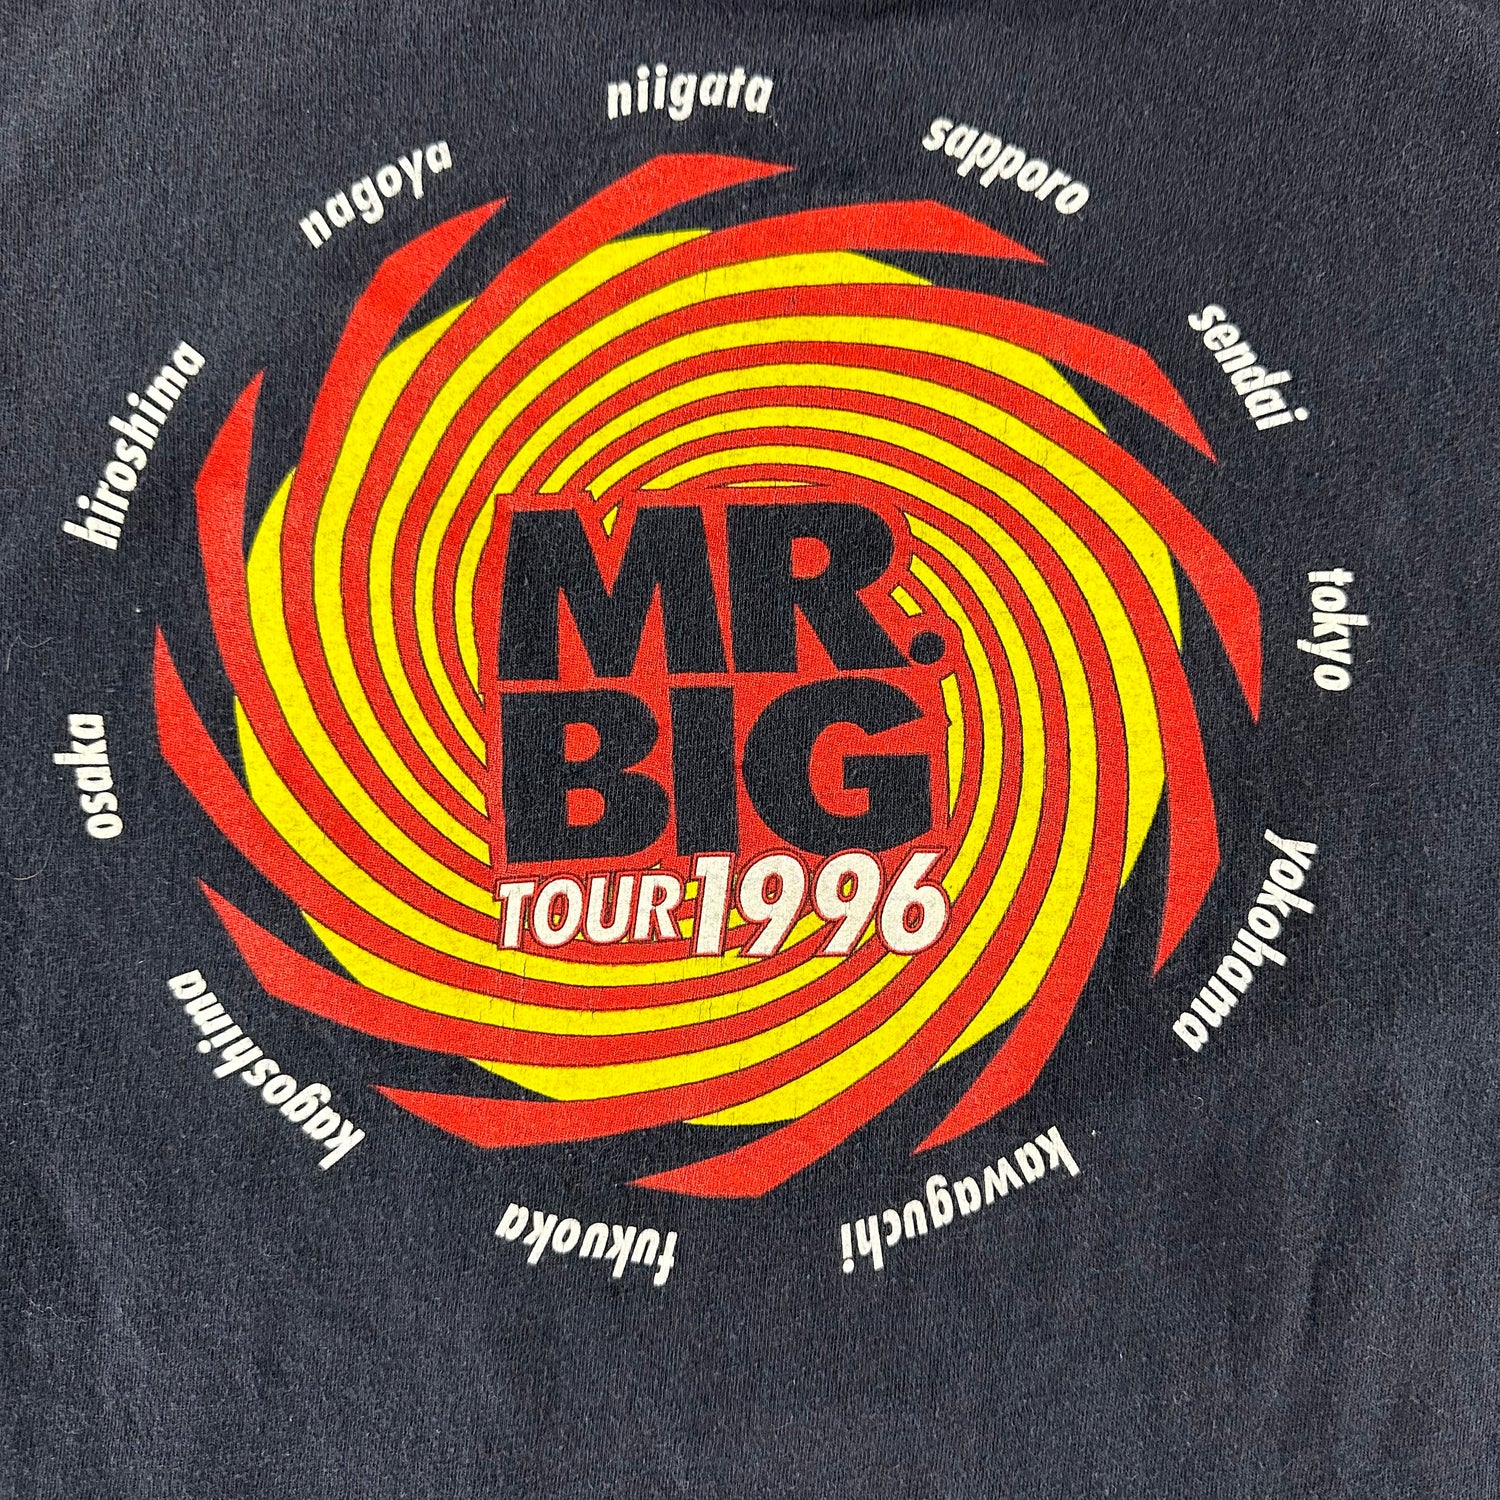 Vintage 1996 Mr. Big T-shirt size Large